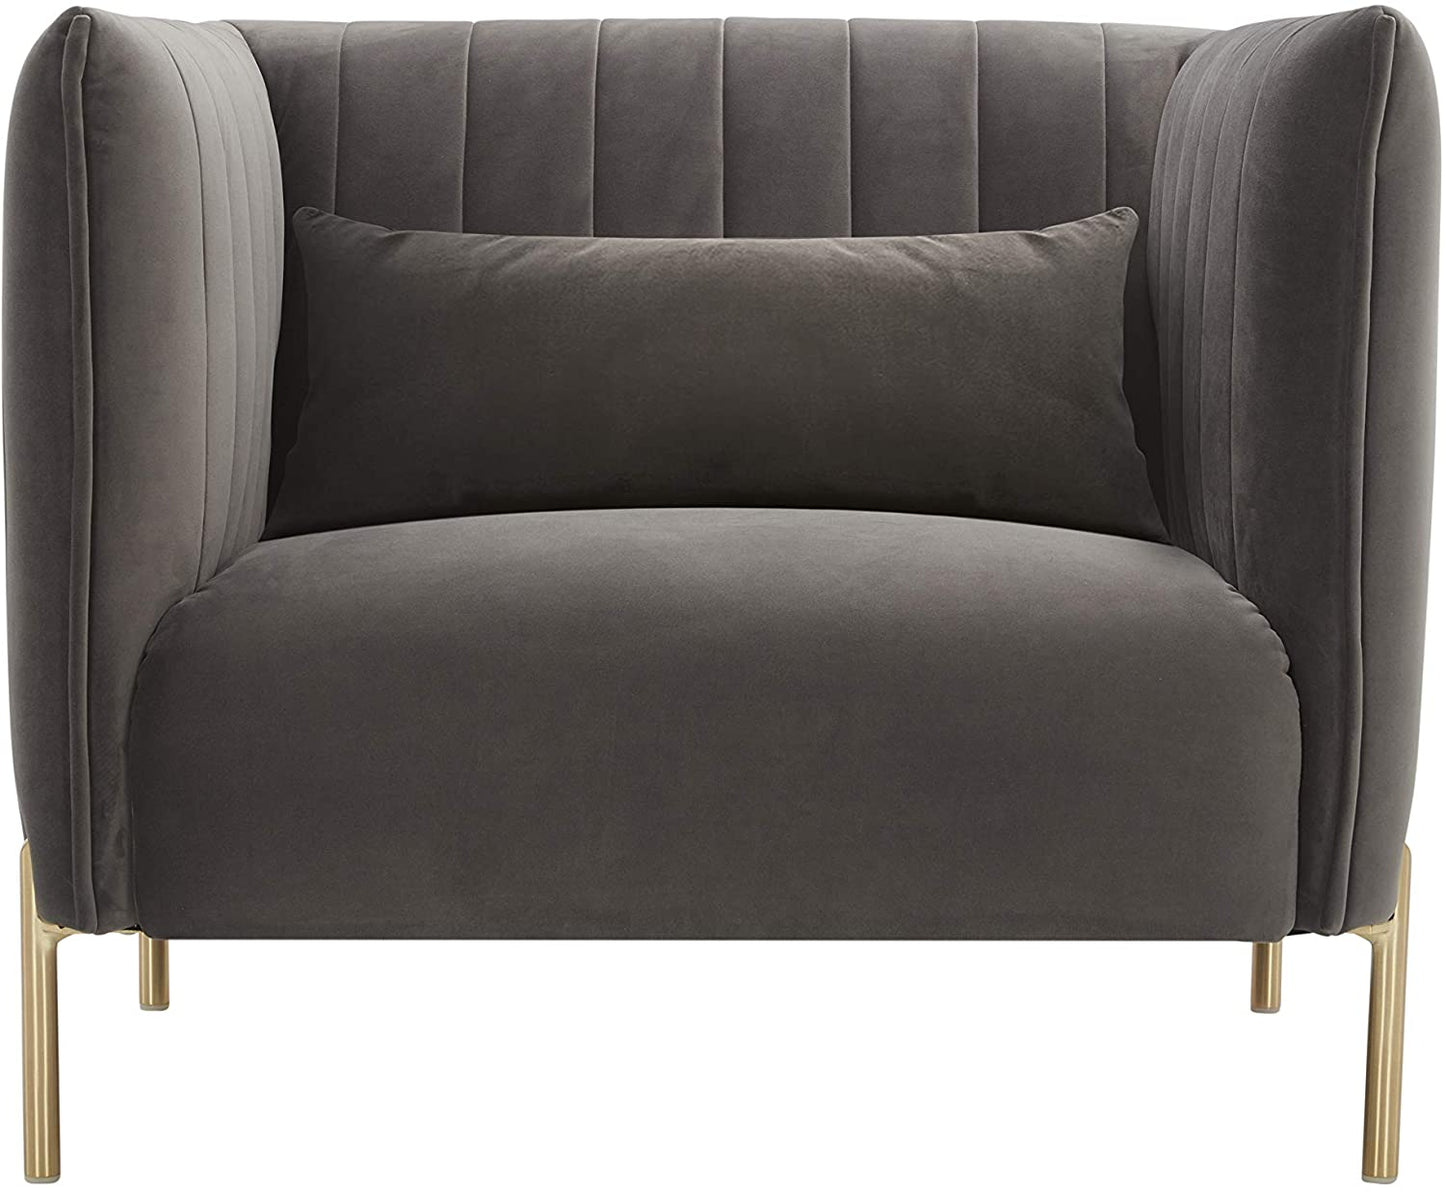 Sofa Chair : Velvet Living Room Chair